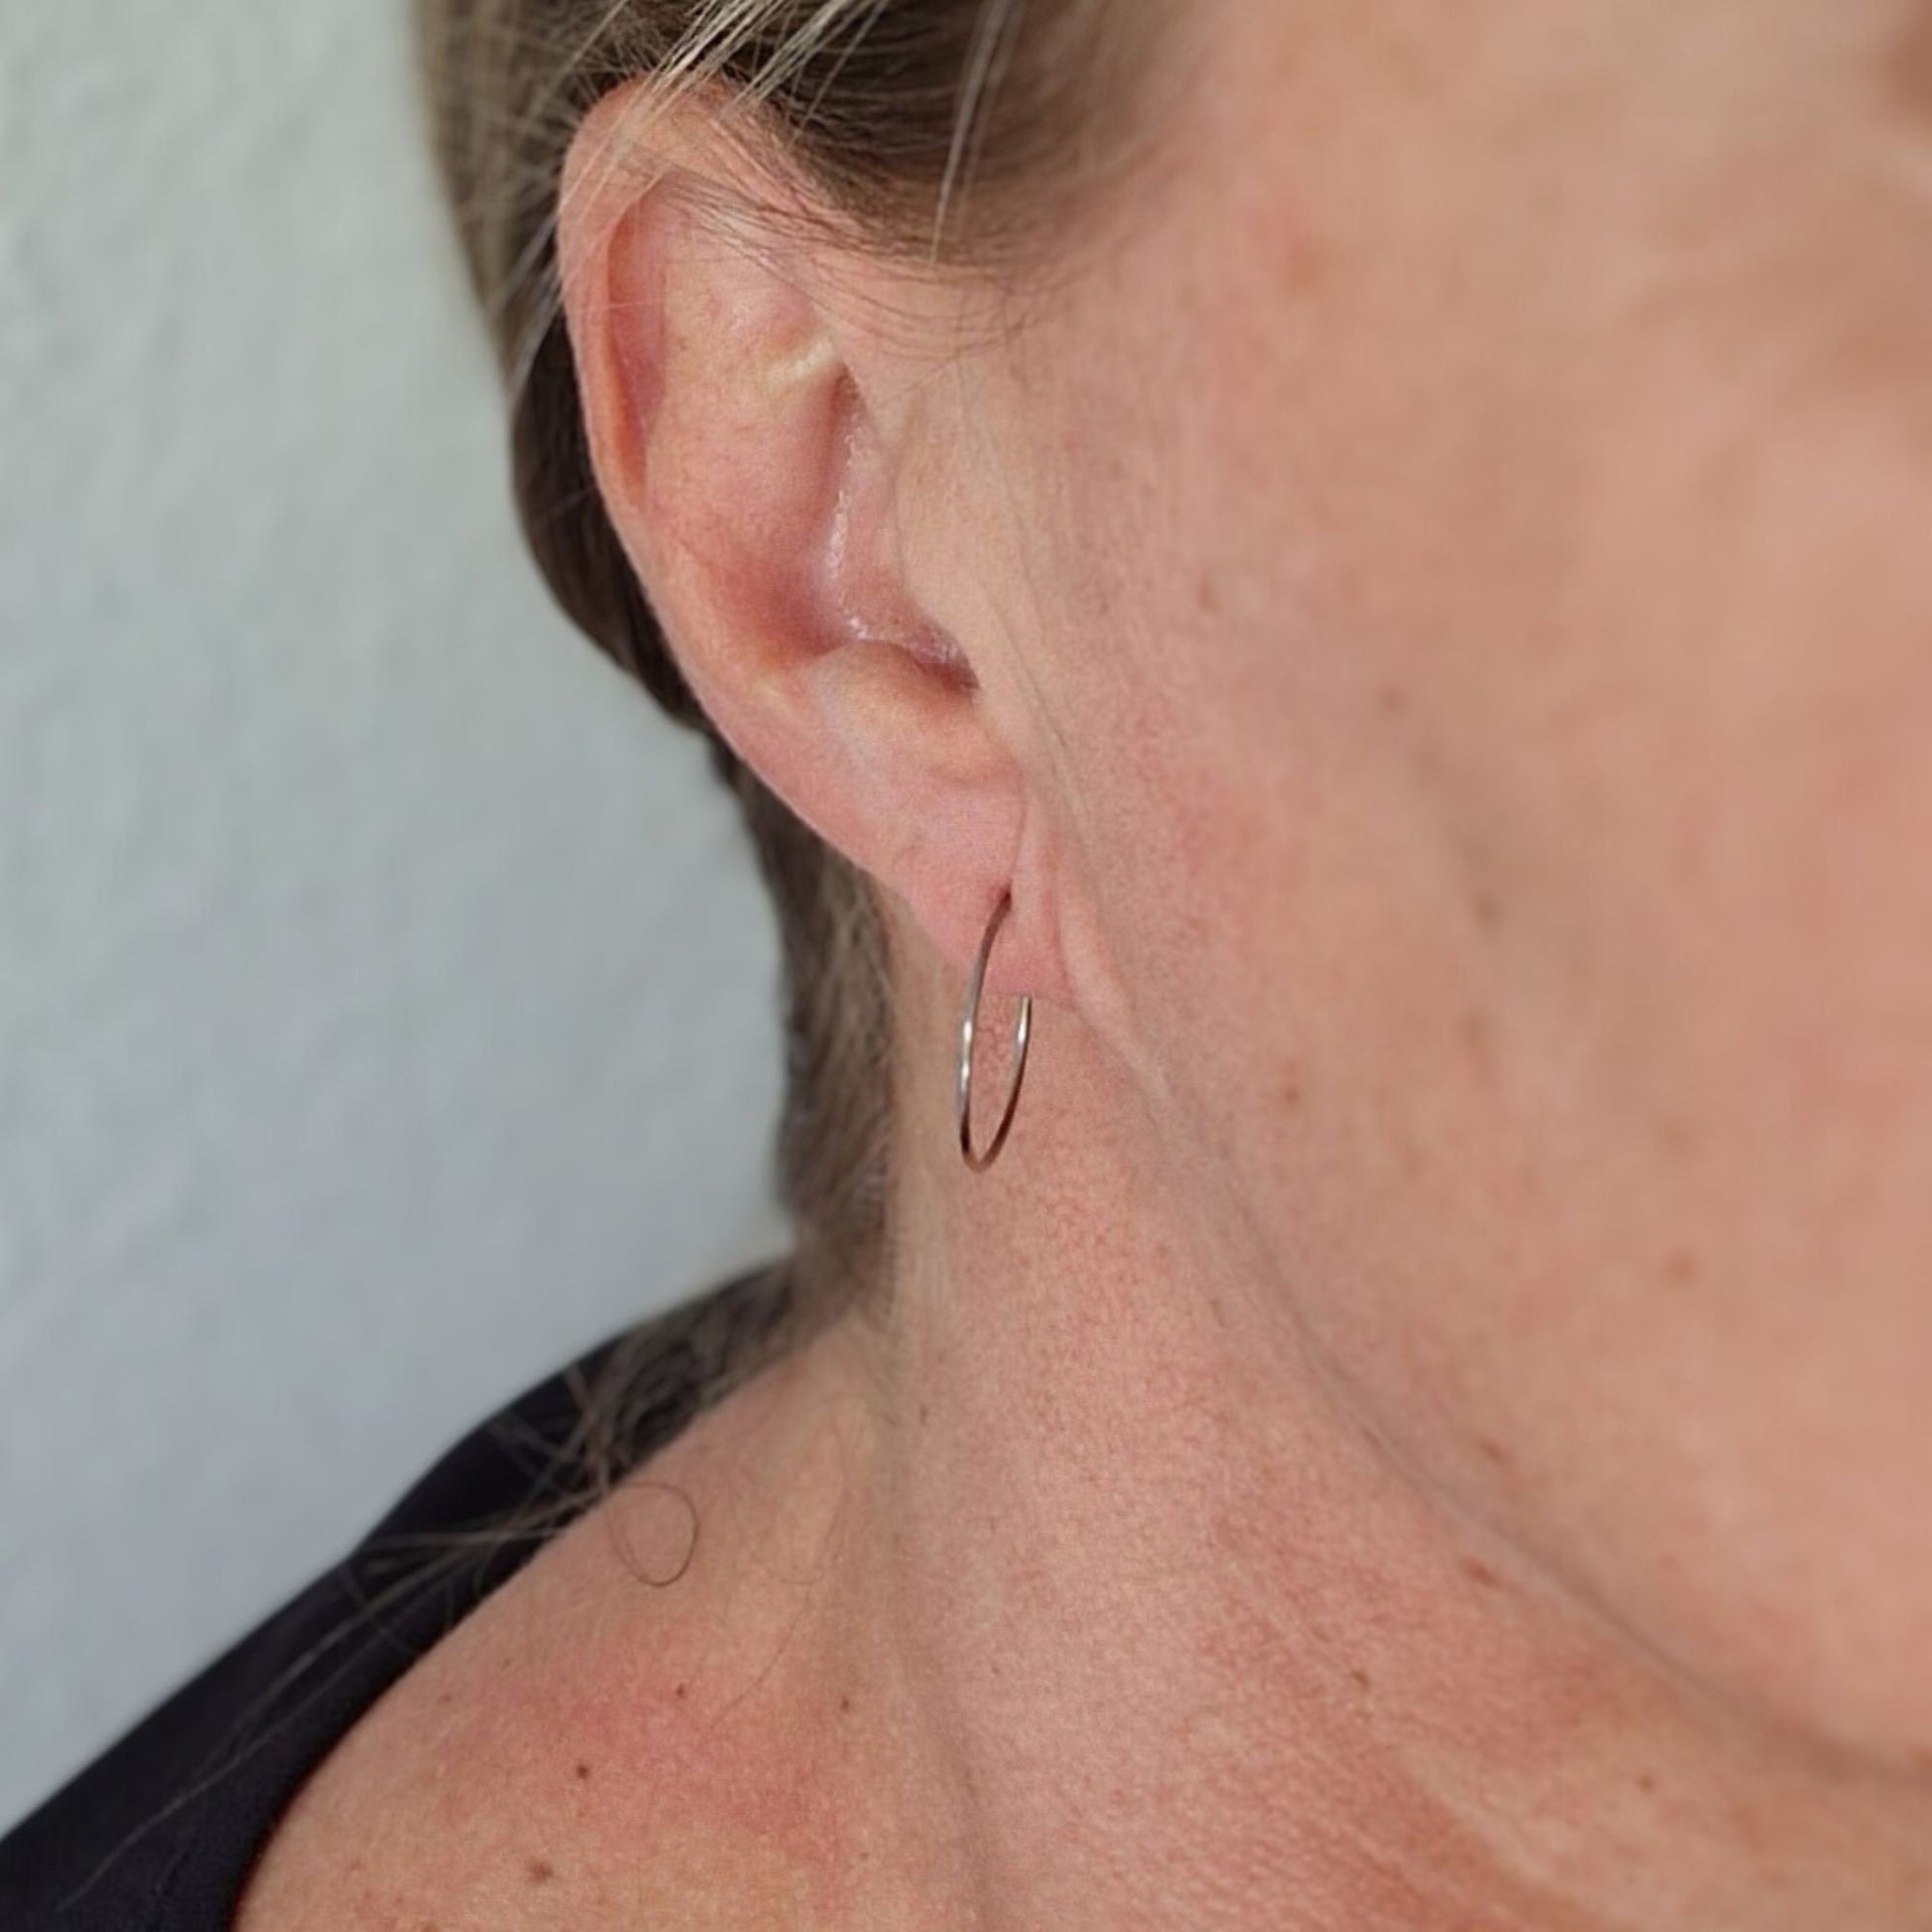 Medium Titanium Hoop Earrings, One Inch, Nickel Free Silver Color Hoops, Hypoallergenic Earrings for Sensitive Ears